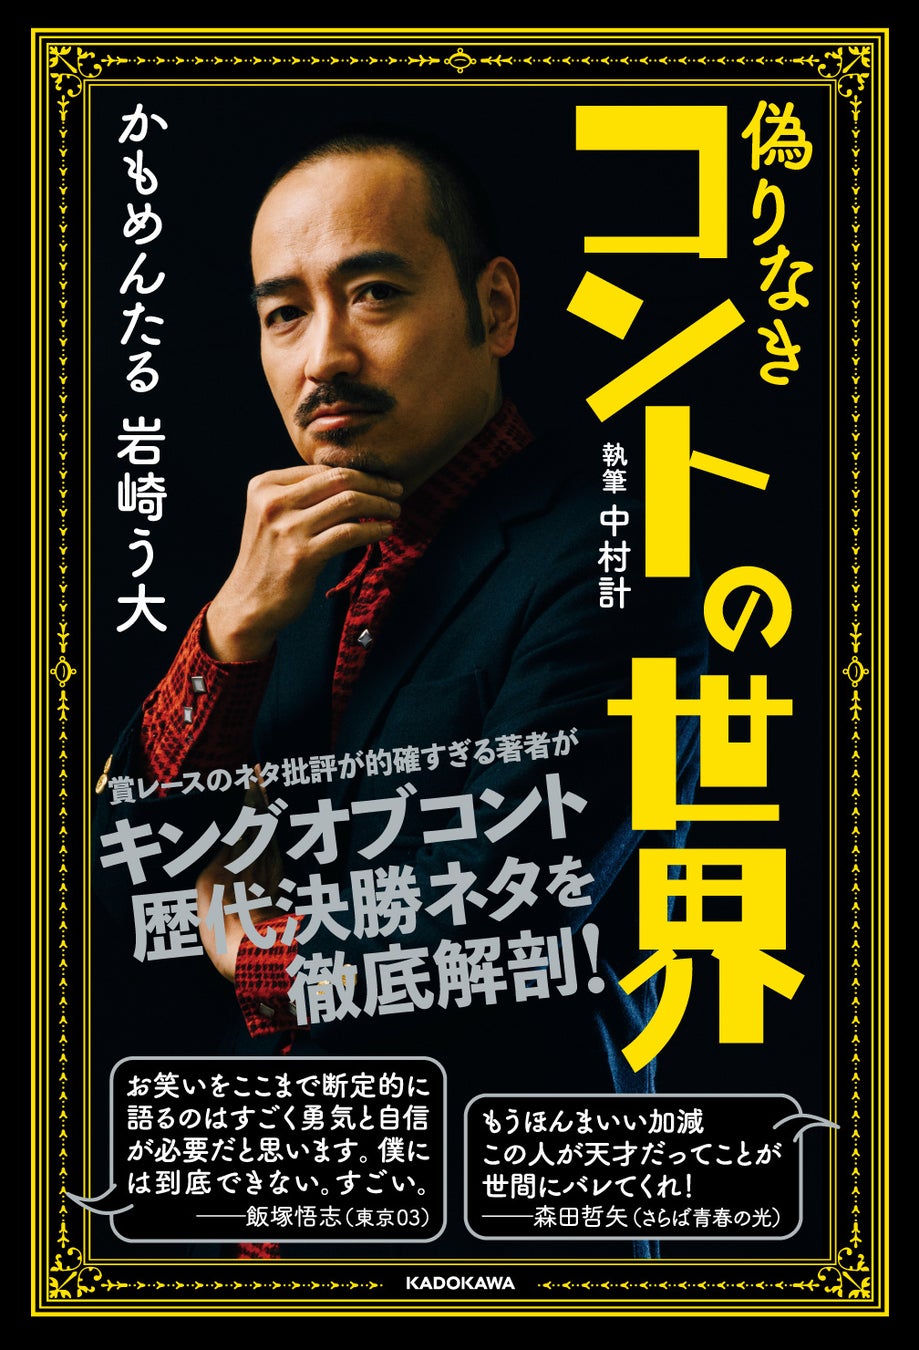 天才コント師、かもめんたる・岩崎う大がキングオブコント歴代決勝ネタを徹底解剖した書籍『偽りなきコントの世界』発売！